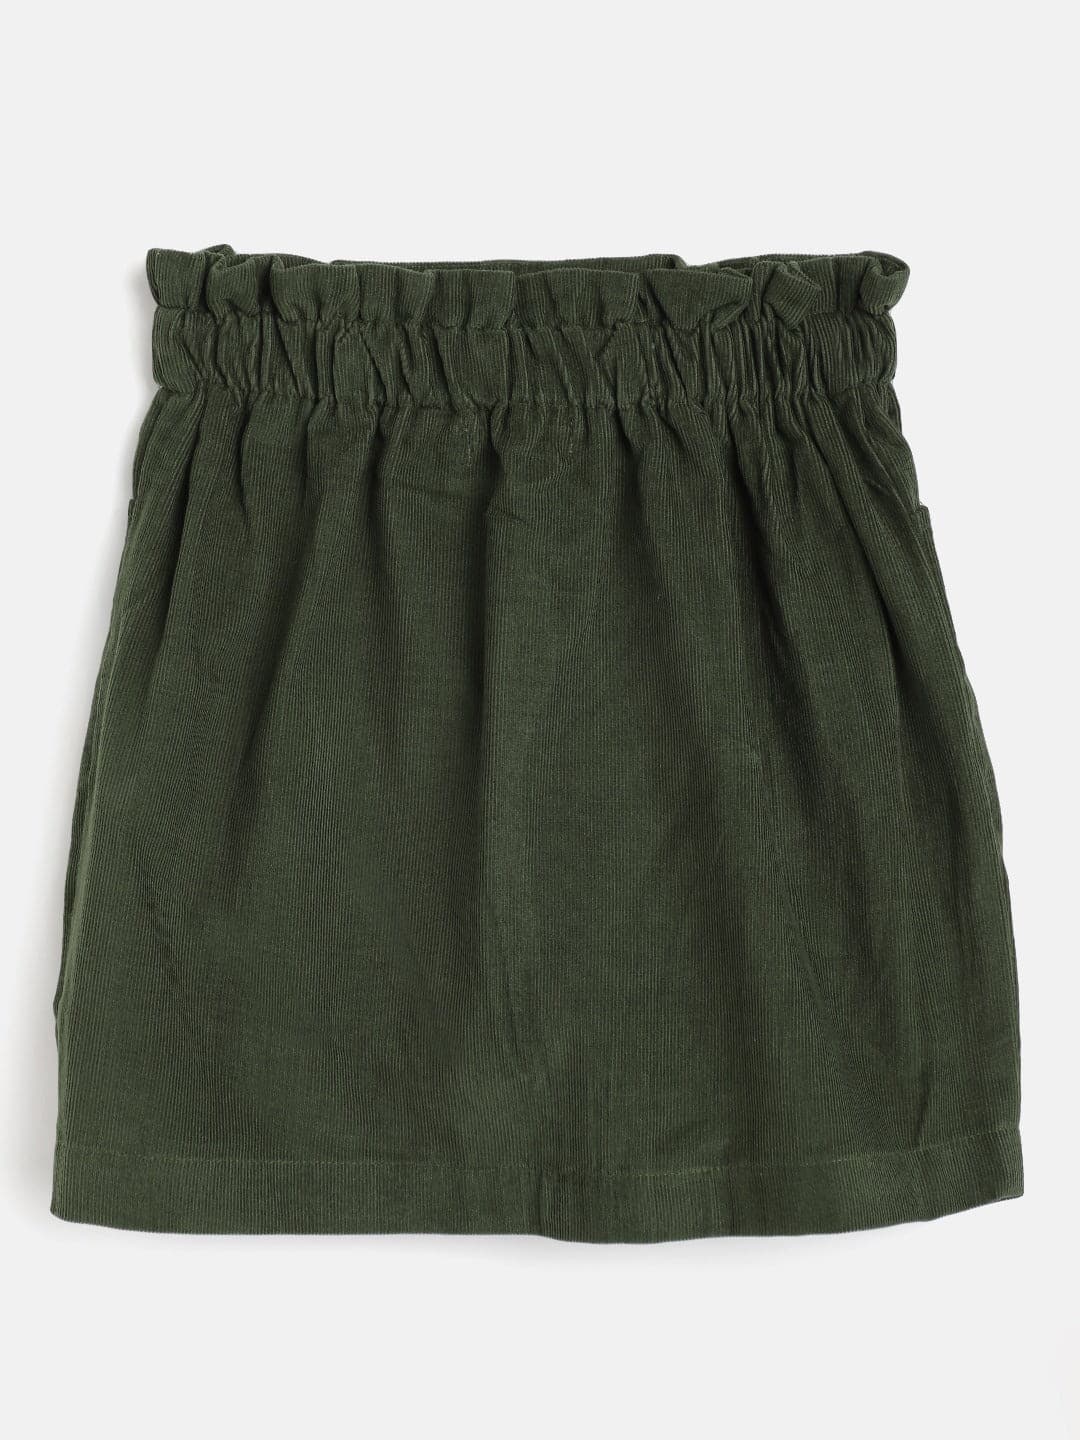 Girls Olive Corduroy Paper Bag Skirt-Girls Skirts-SASSAFRAS